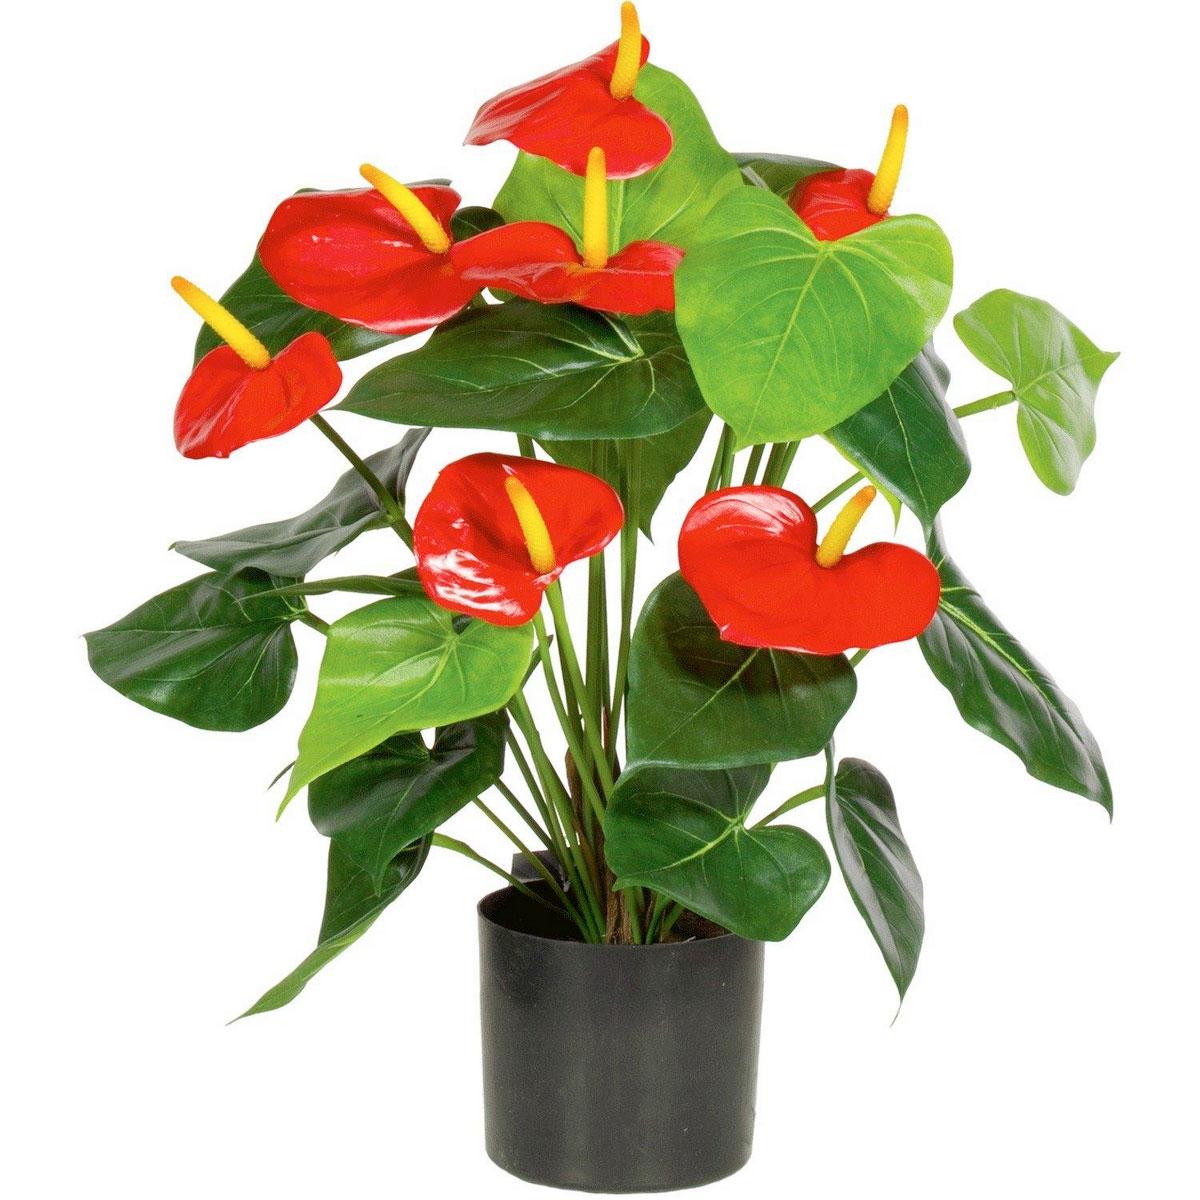 Anthurium Artificial Flower Plant